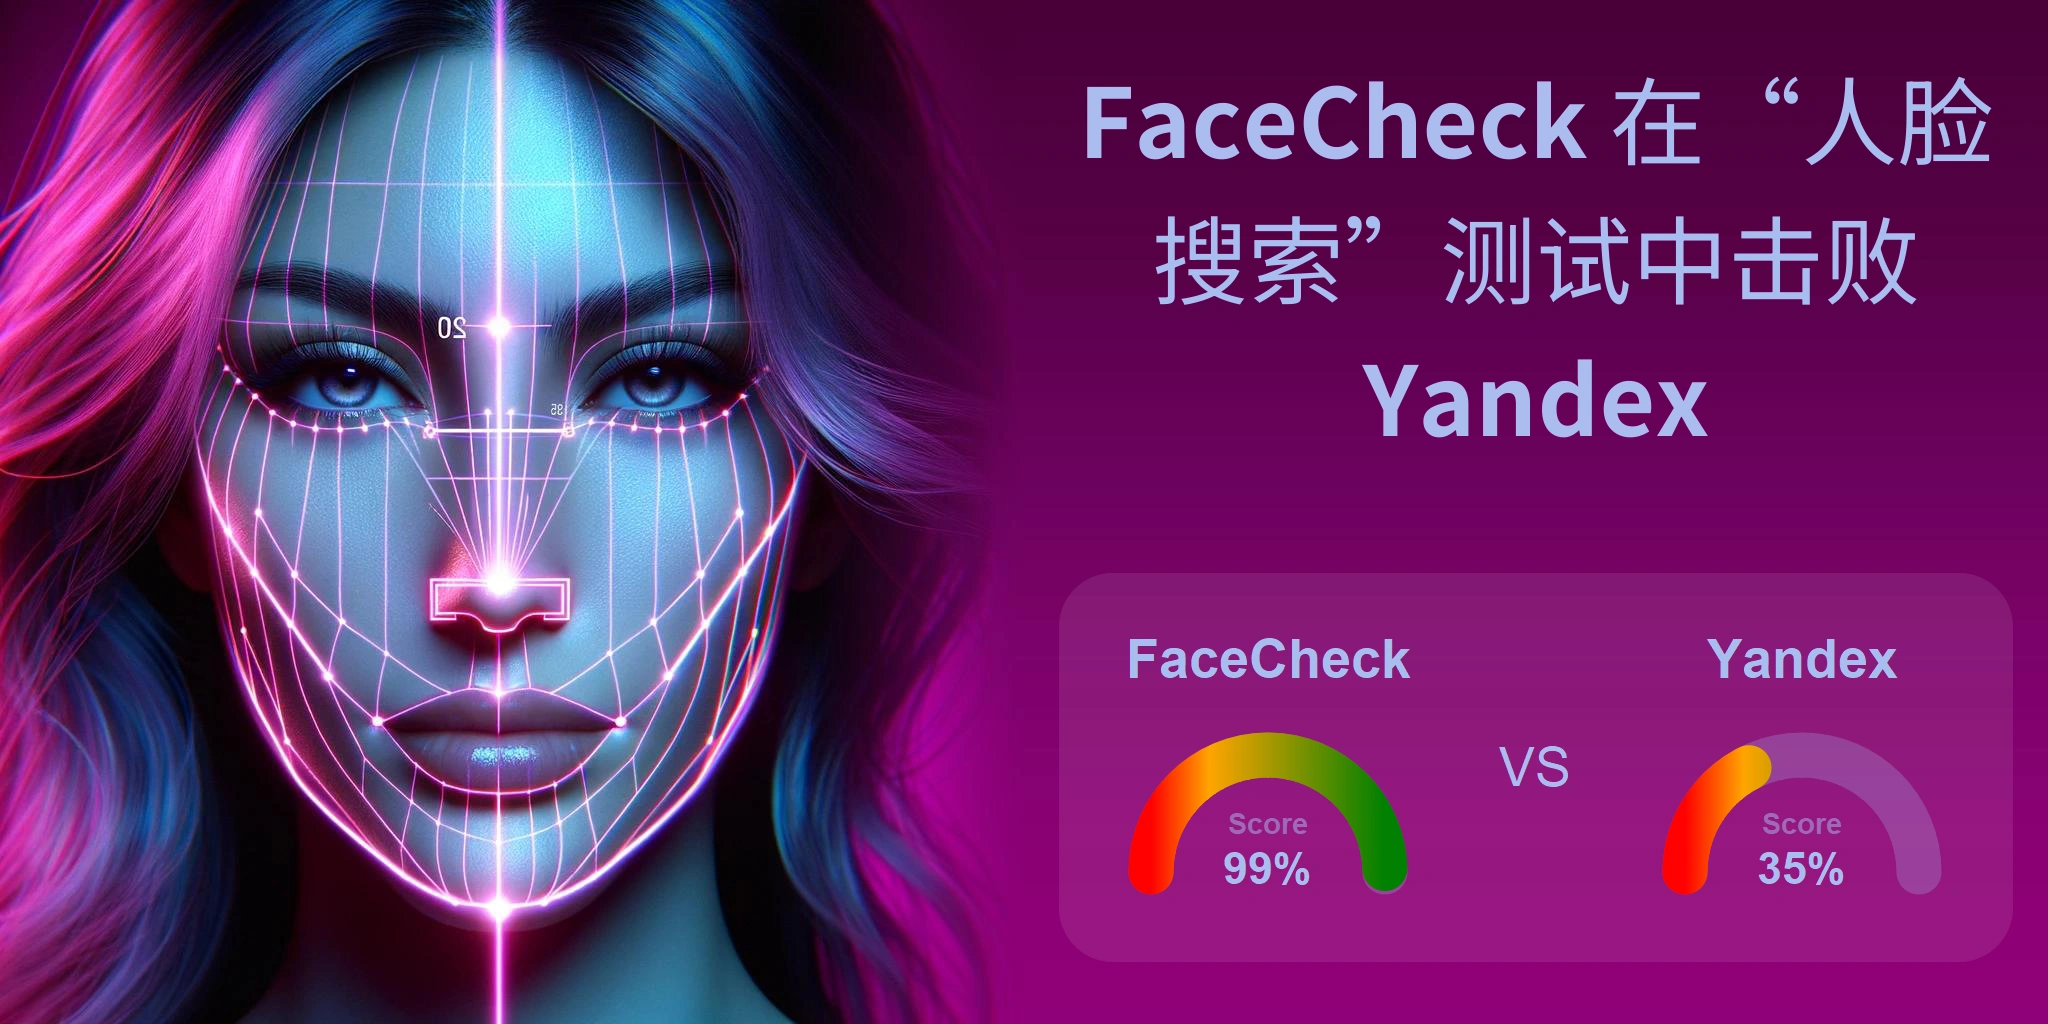 哪一个更适合人脸搜索：<br>FaceCheck 还是 Yandex？